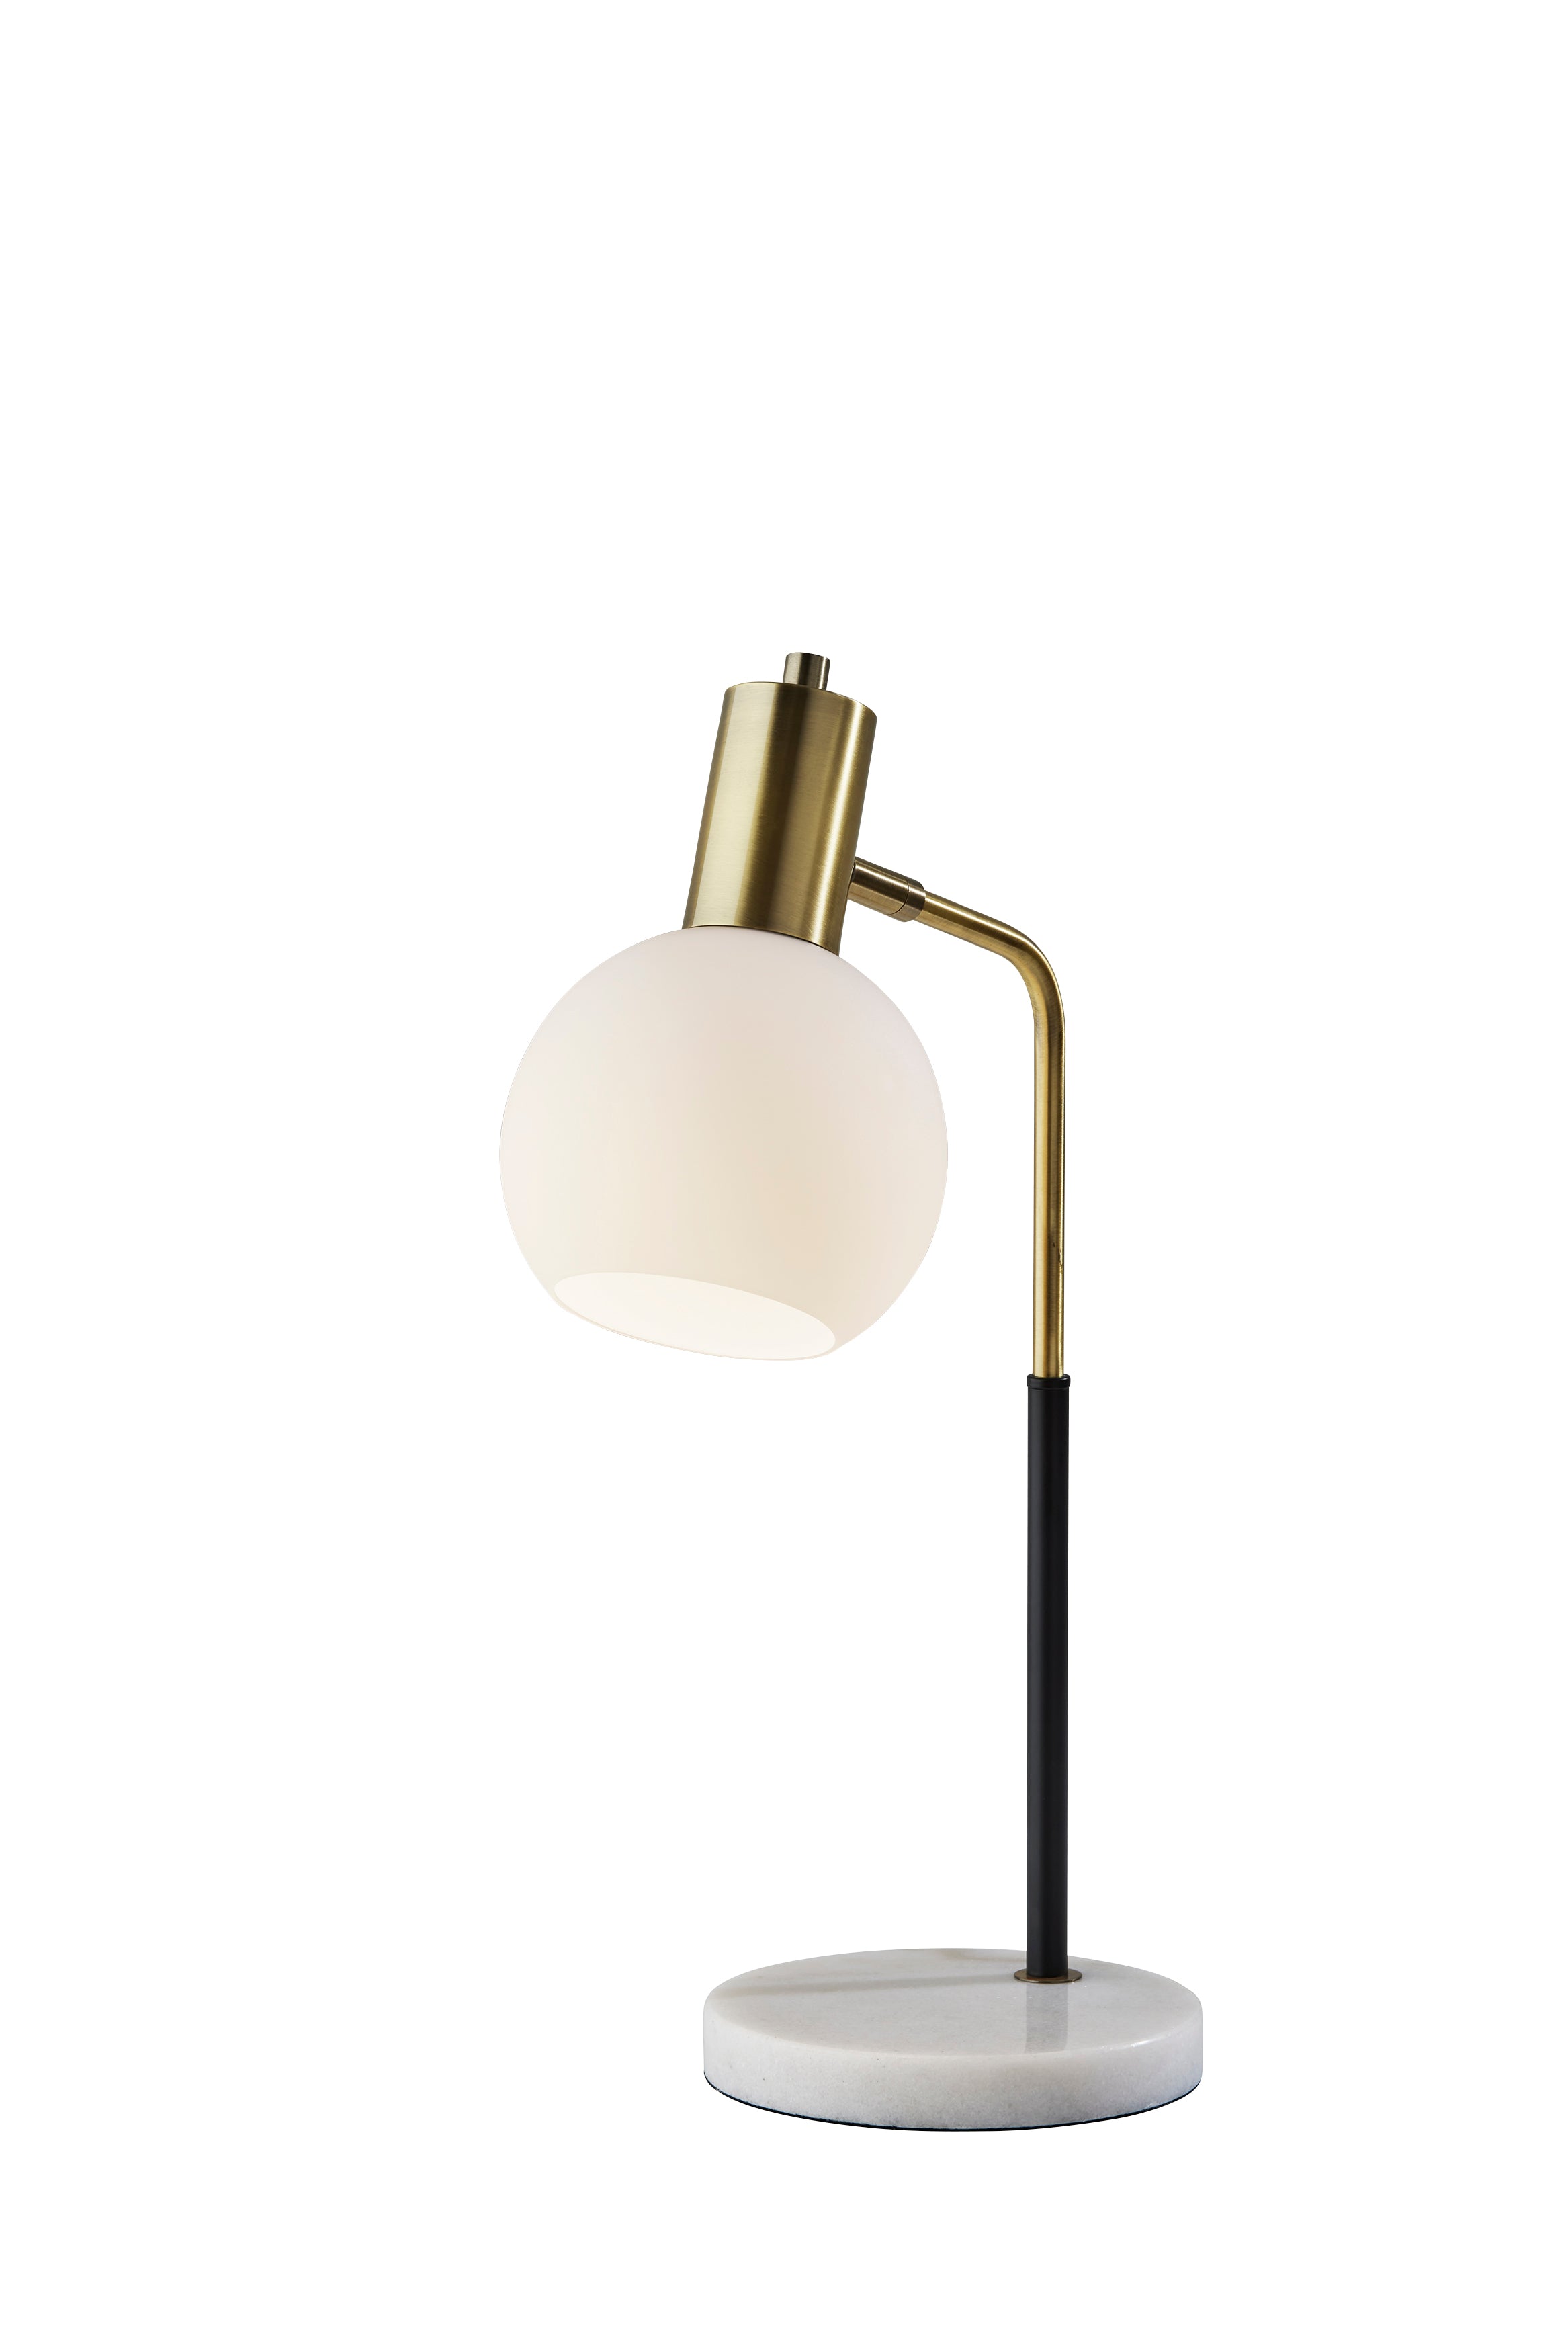 CORBIN Lampe sur table Noir, Or - 3578-21 | ADESSO